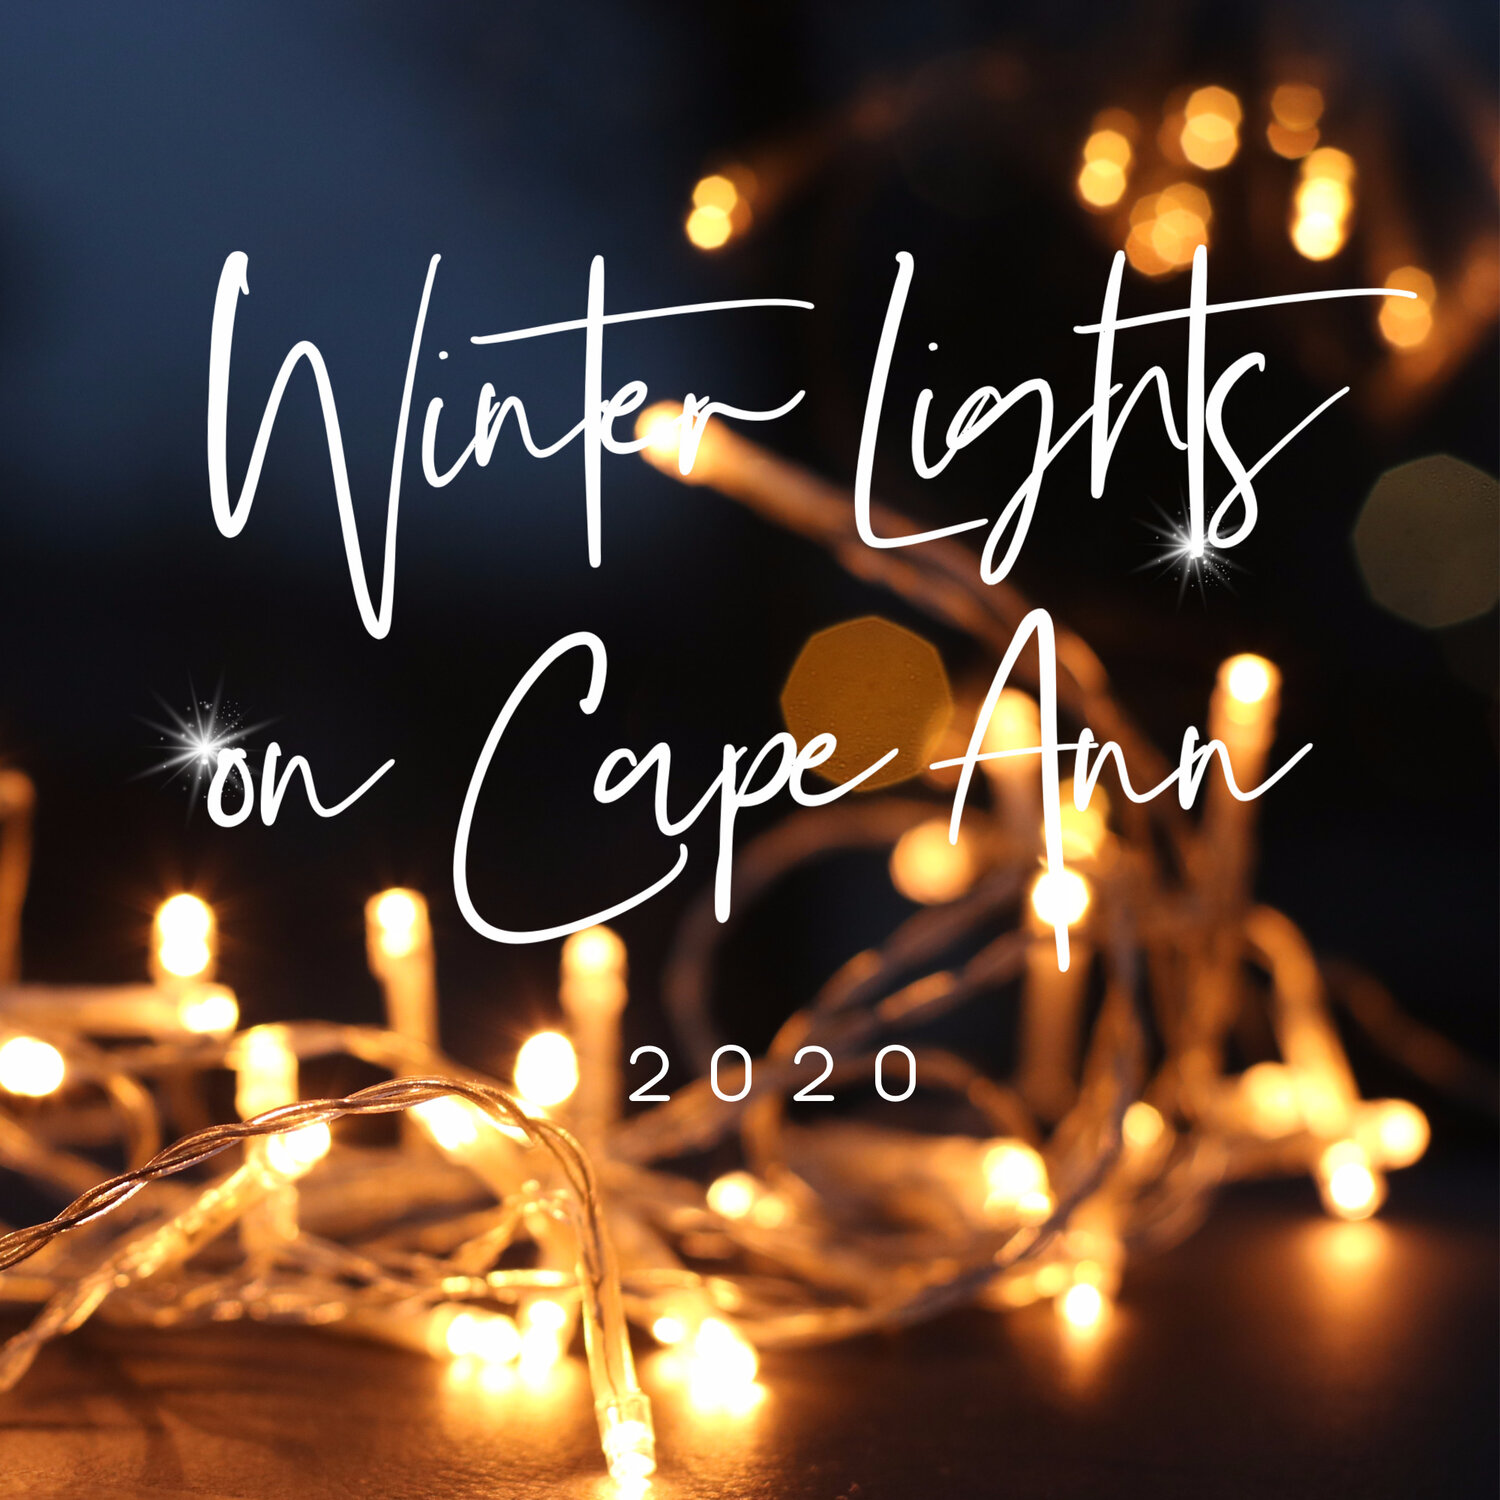 Winter Lights on Cape Ann